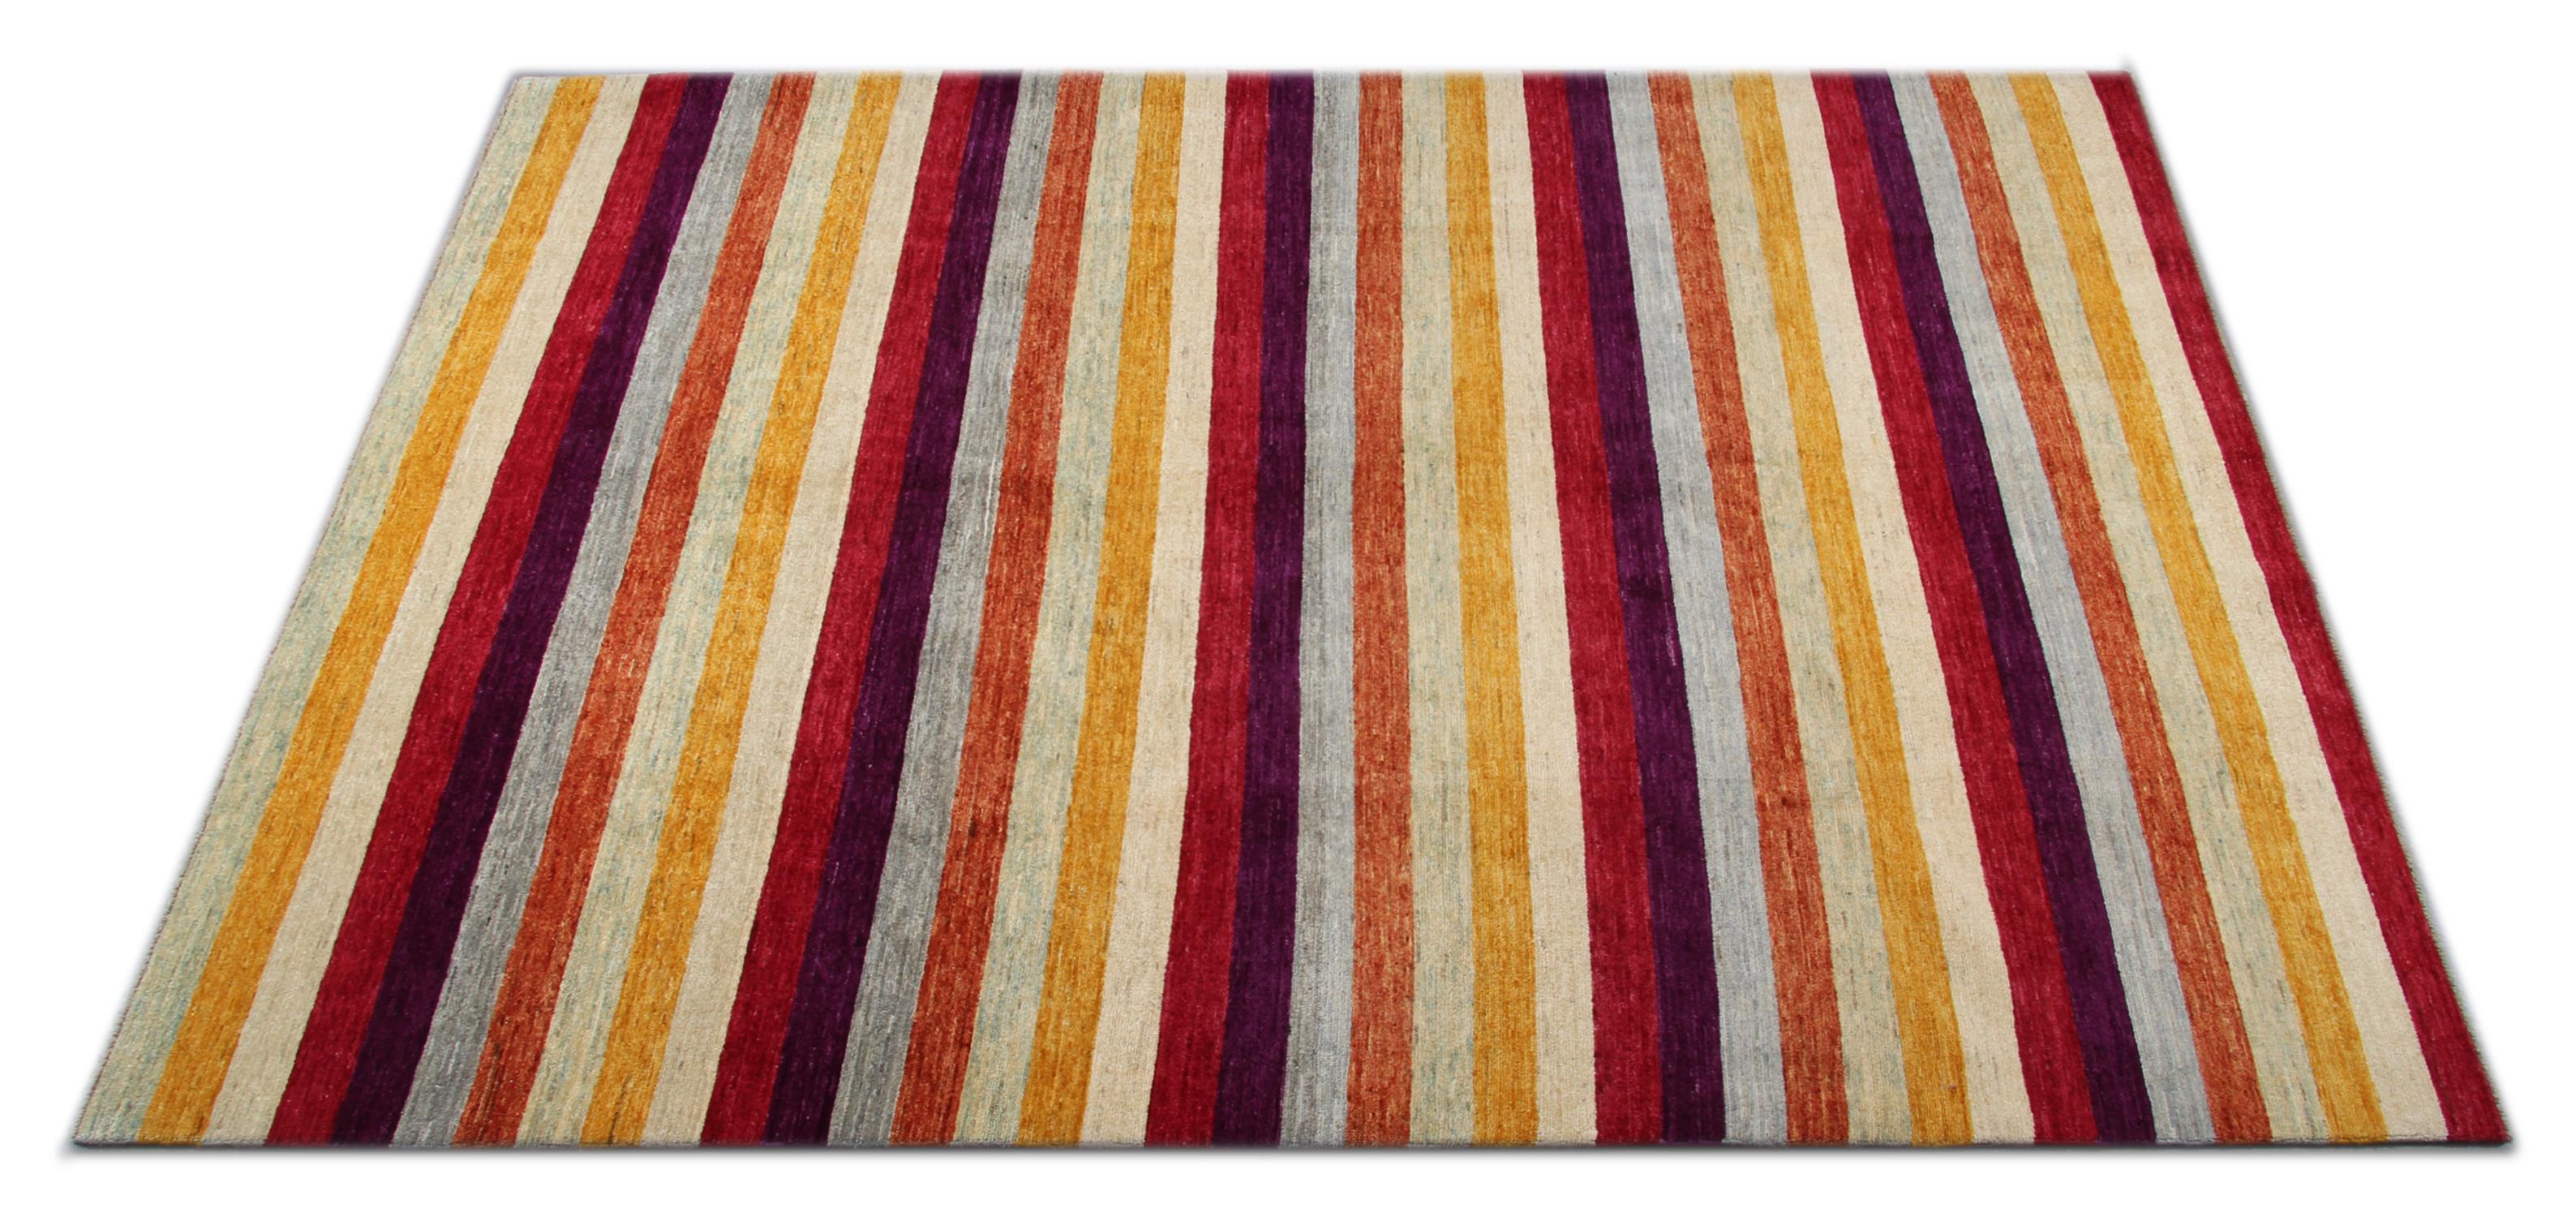 Ce tapis moderne a été noué à la main en Inde. Il s'agit d'un tapis à poils ras. Fabriqué en laine filée à la main avec des rayures multicolores d'orange, de jaune, de gris et de vert. Le design contemporain est parfait pour les intérieurs modernes